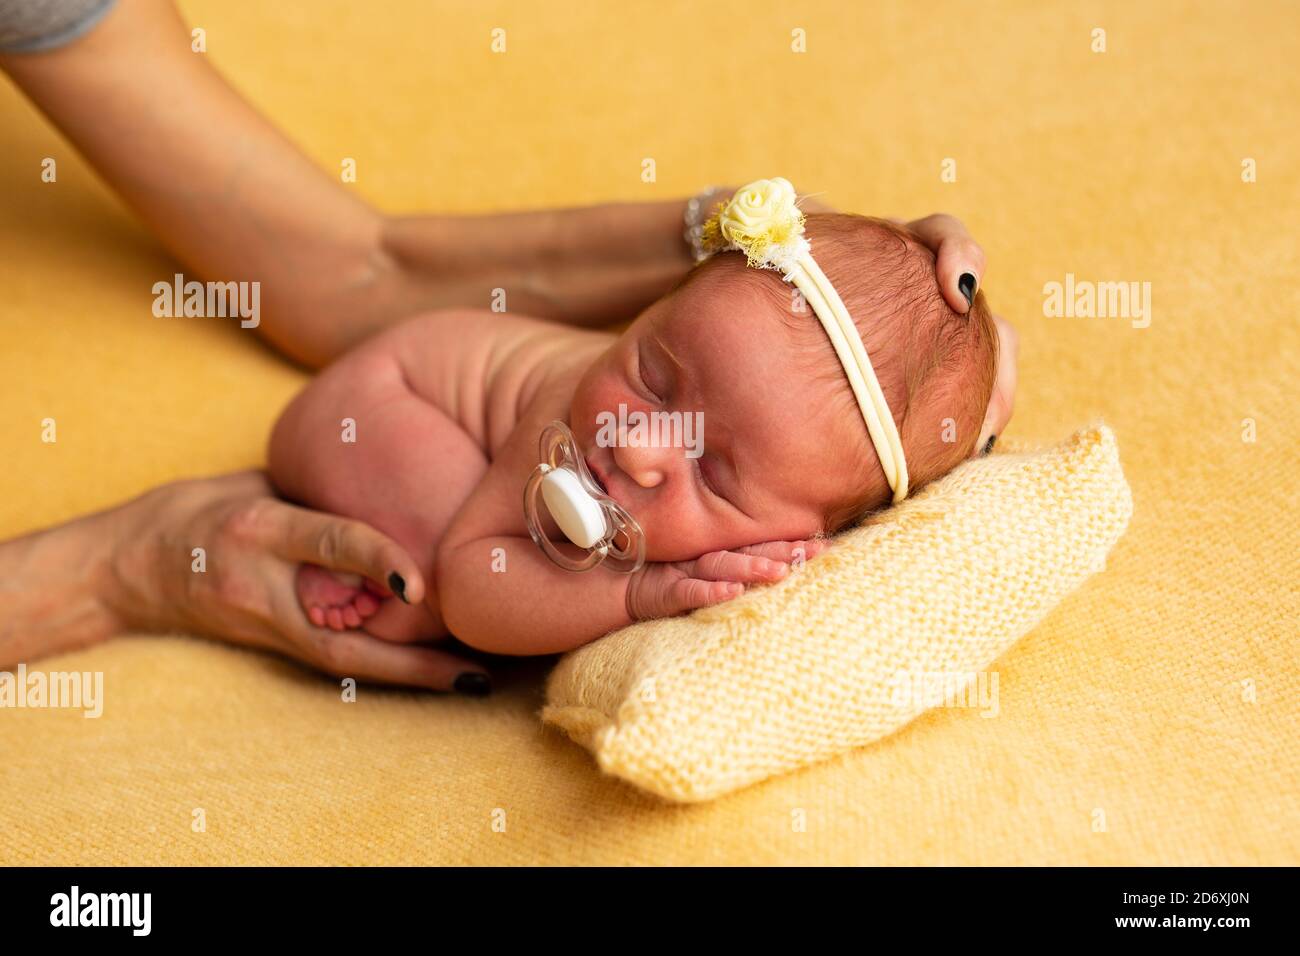 Neugeborenes Baby Konzept Fotografie Vorbereitung, nette Neugeborene Baby zurück mit einem Verband auf dem Kopf, mit Fotografen Hände Stockfoto